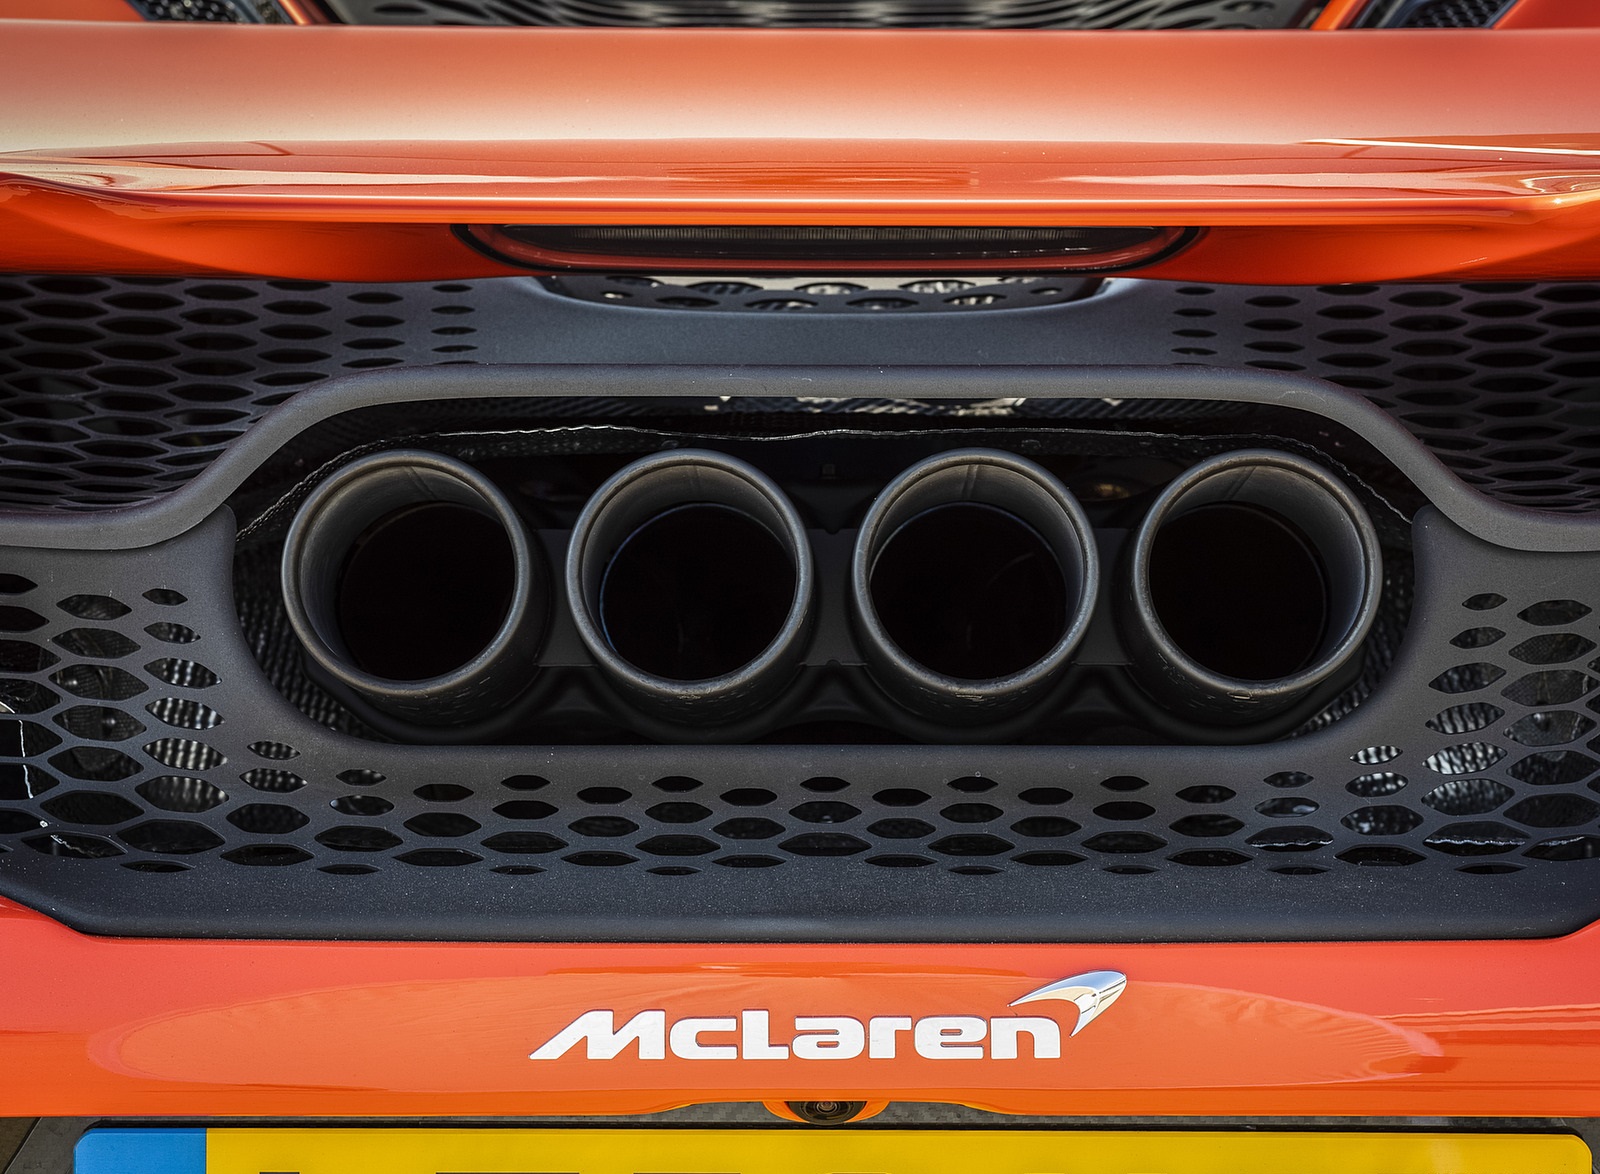 2021 McLaren 765LT Exhaust Wallpapers  #65 of 159